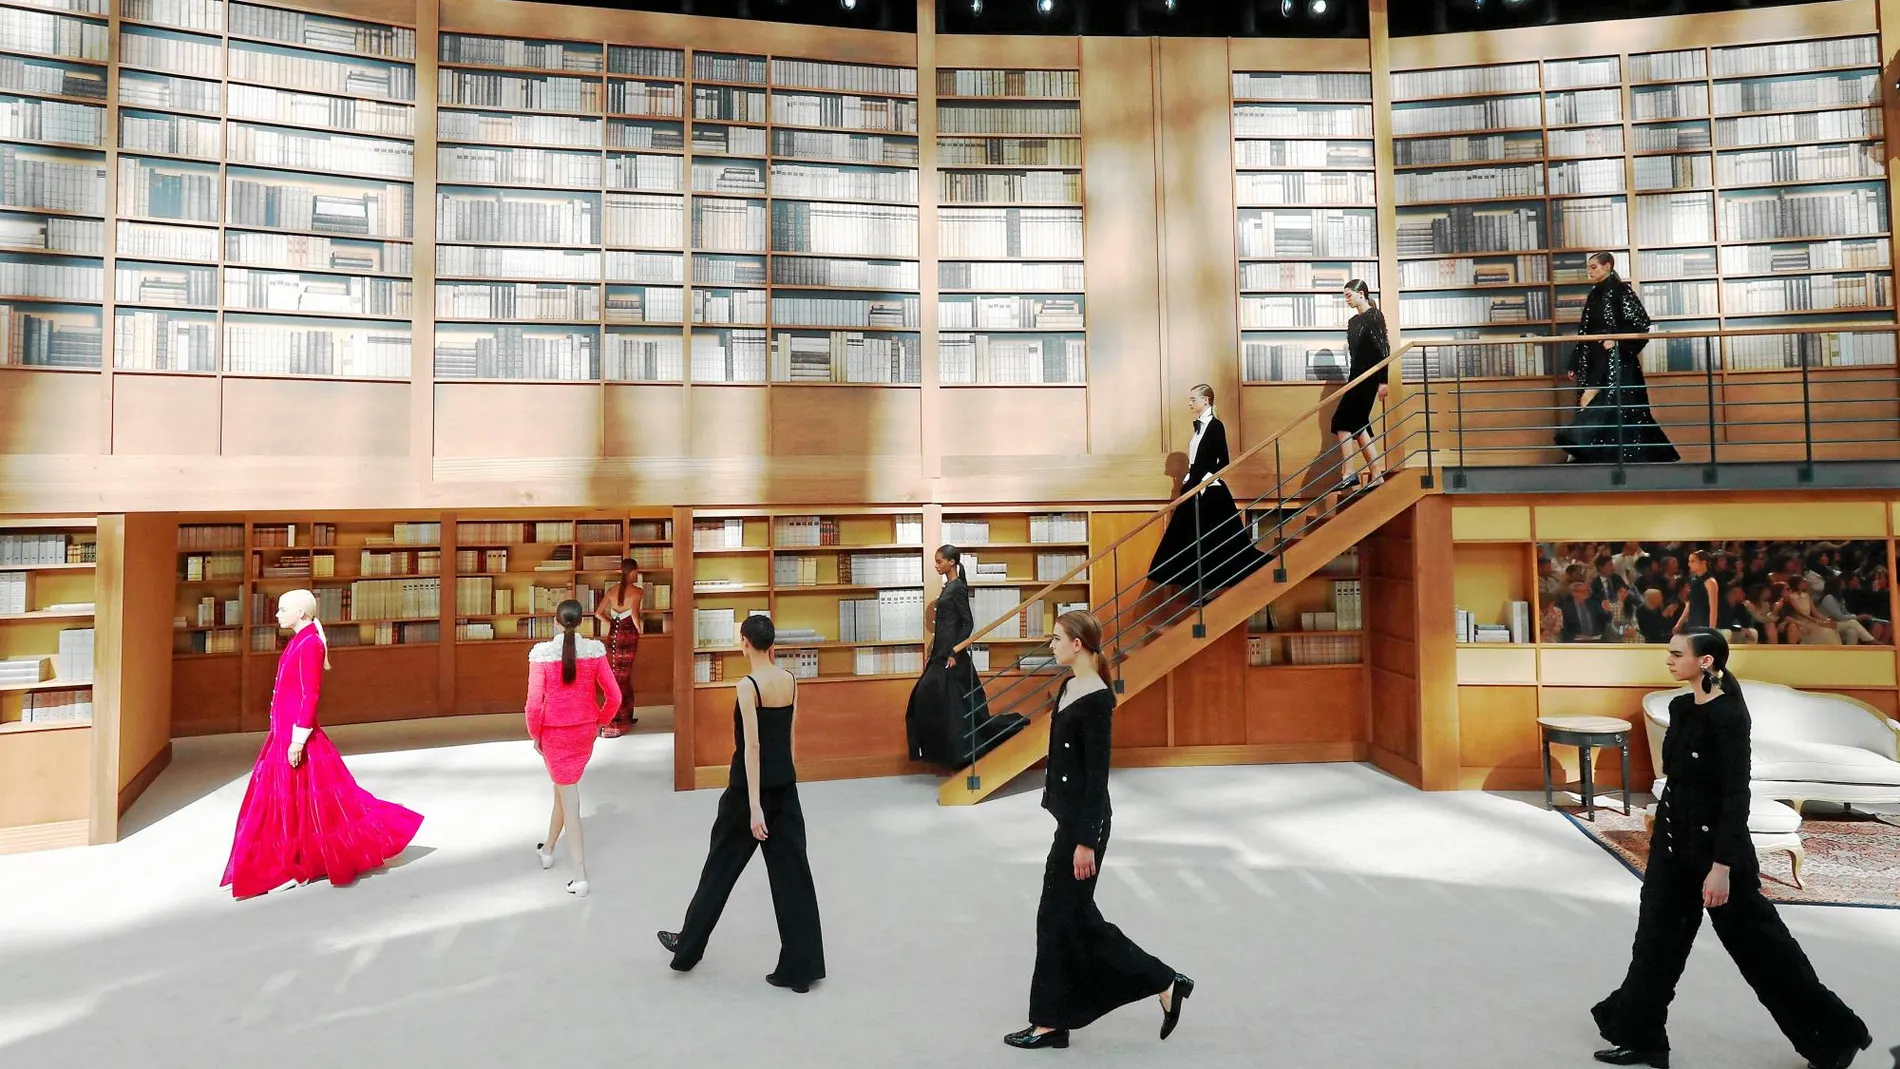 El espacio se convirtió en una biblioteca de altísimas estanterías como la que Lagerfeld tenía en su casa / Efe